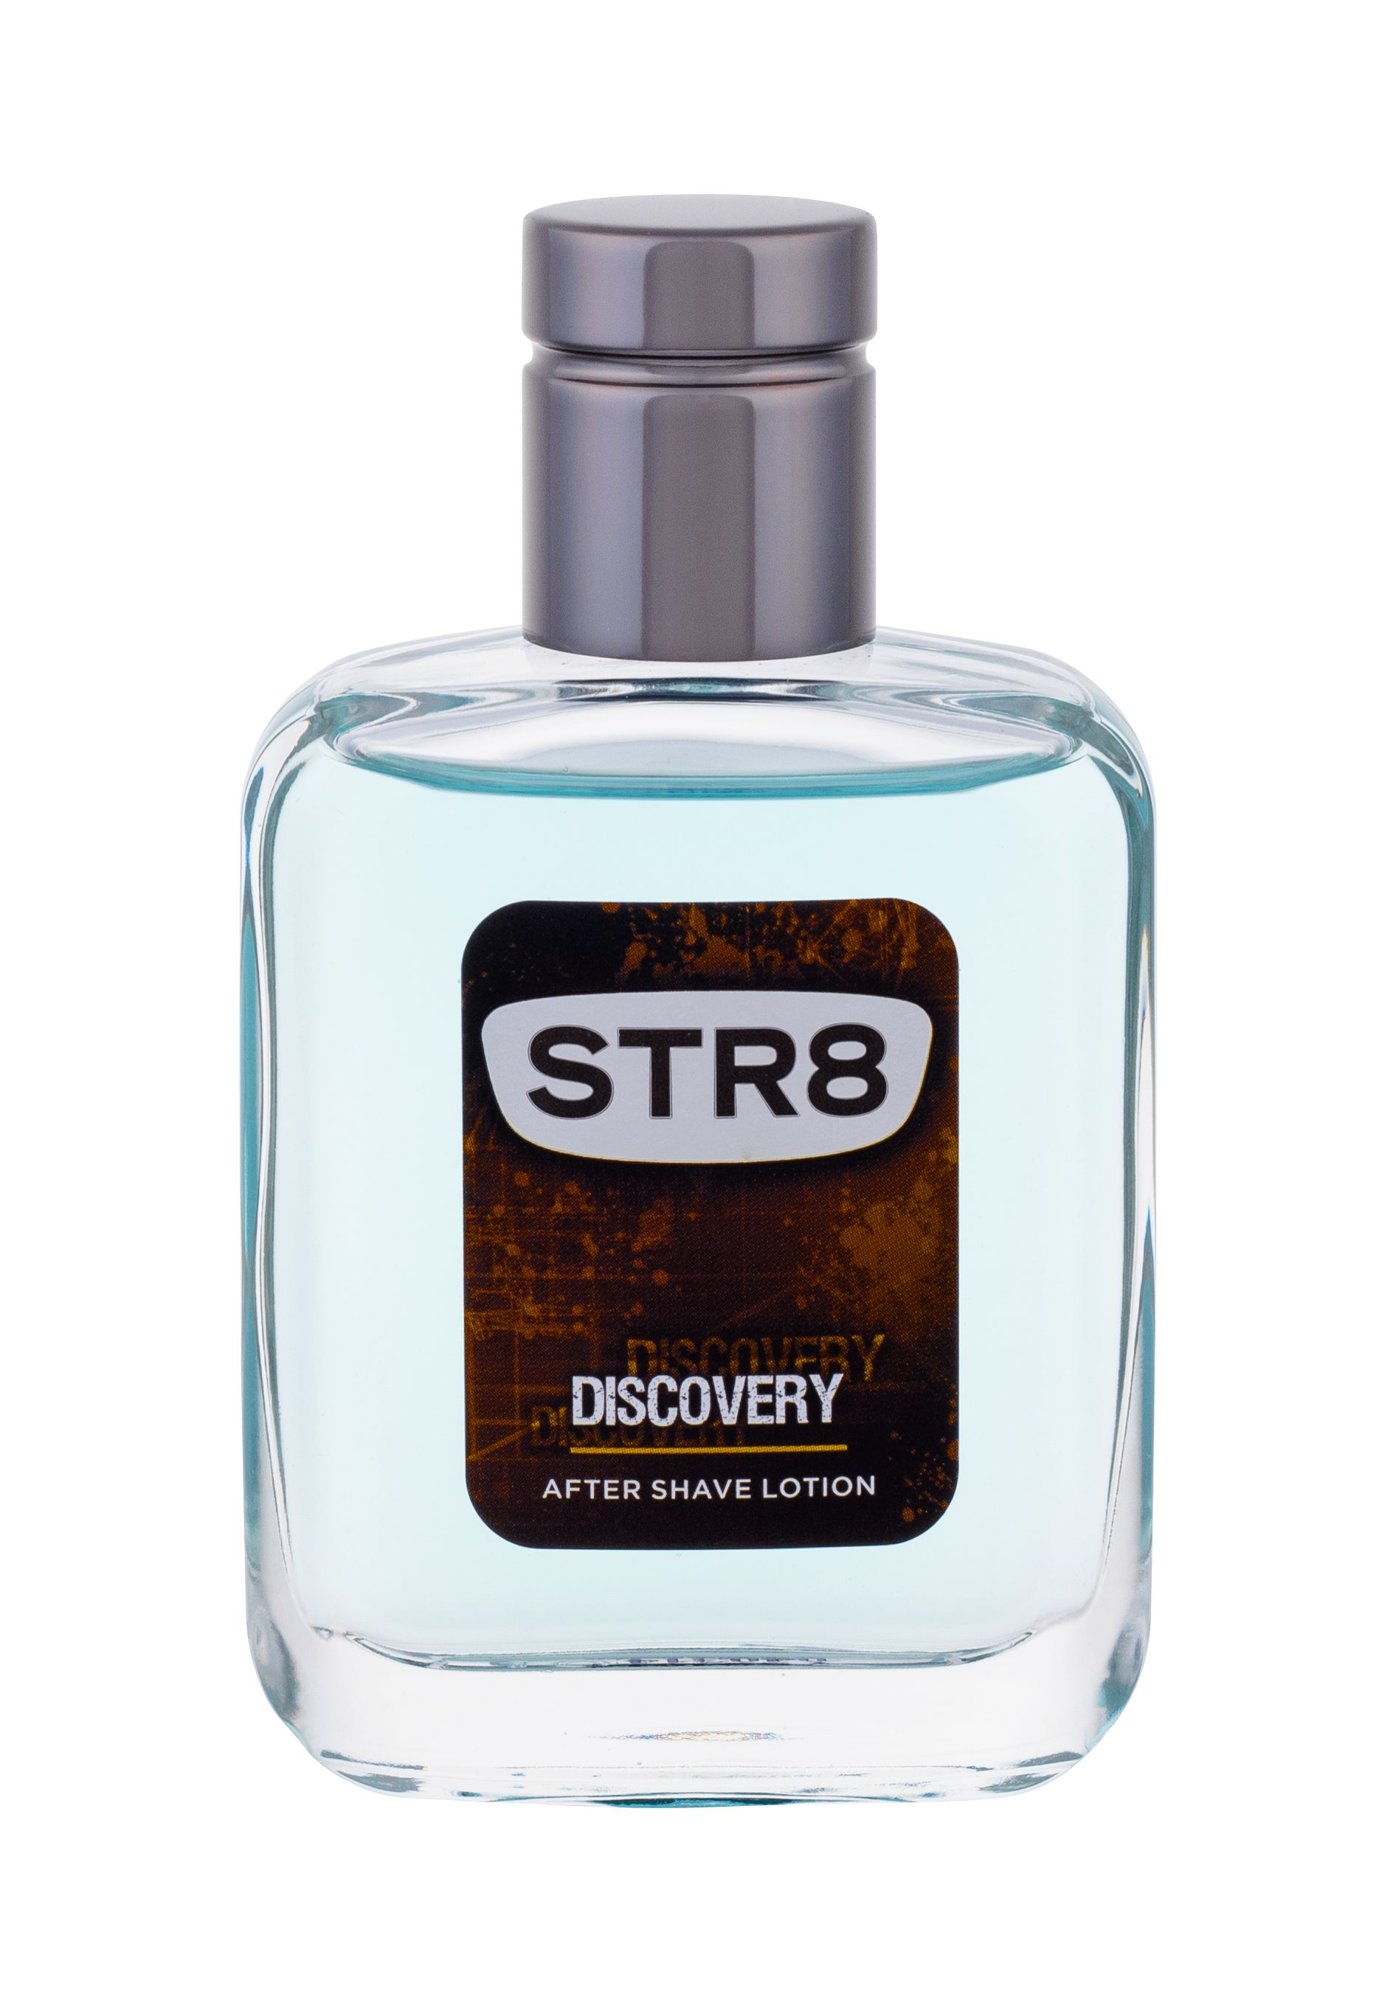 STR8 Discovery 50ml vanduo po skutimosi